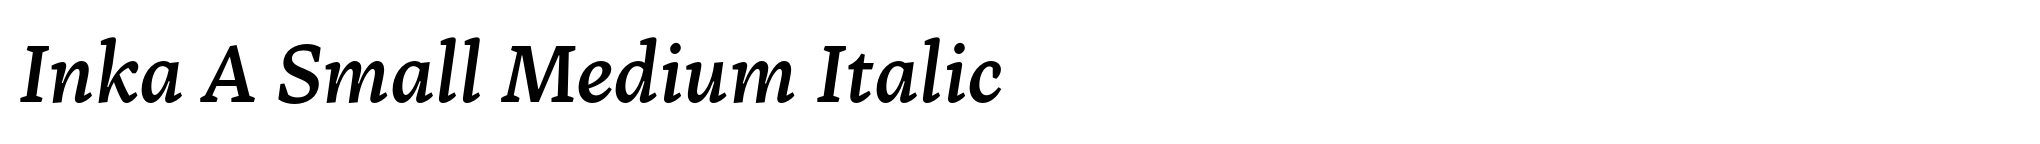 Inka A Small Medium Italic image